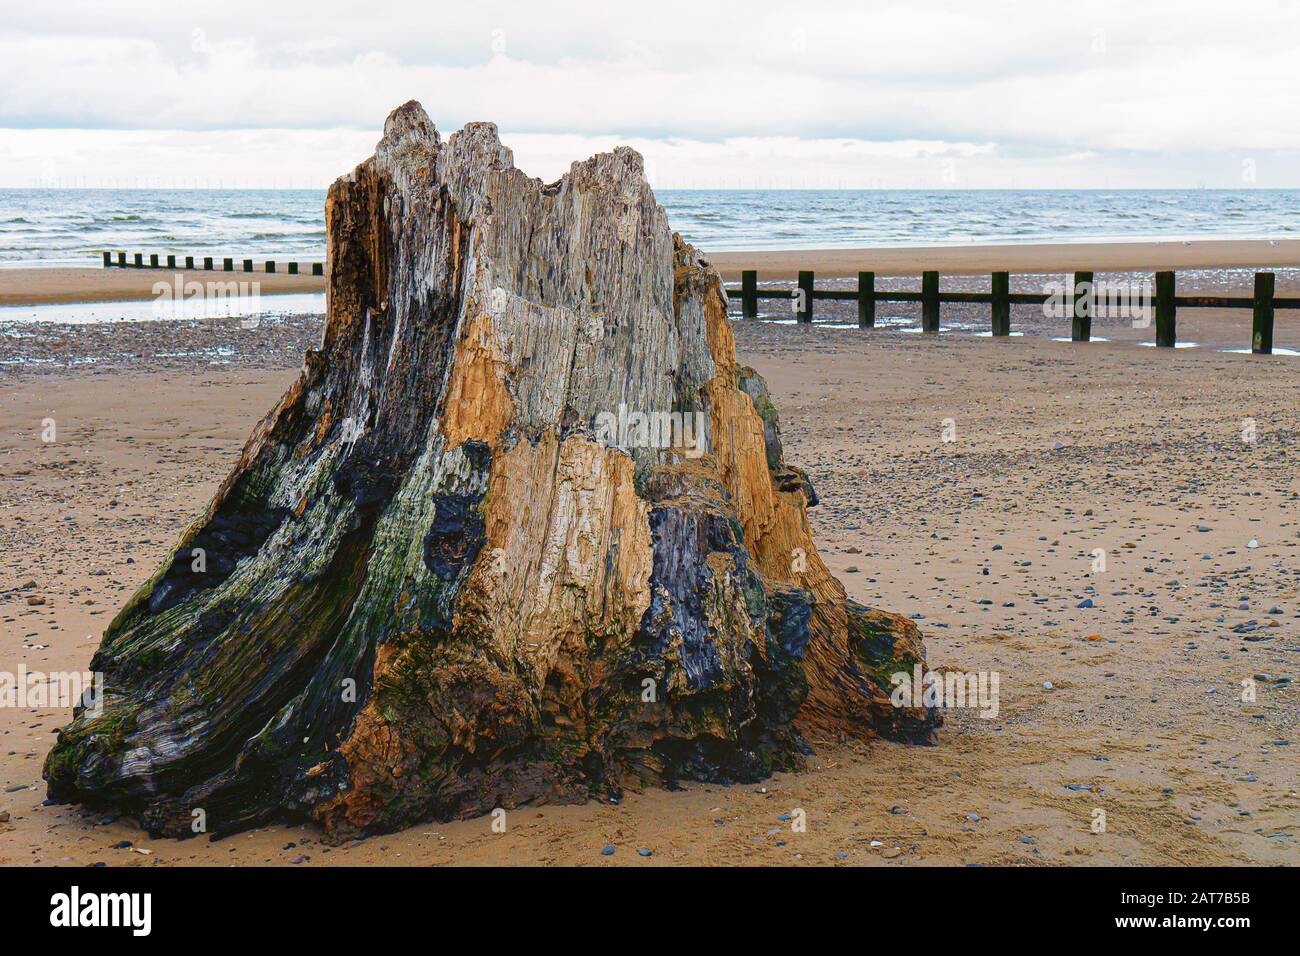 Tronc d'arbre fossilisé sur la plage, Rhyl, Pays de Galles du Nord Banque D'Images